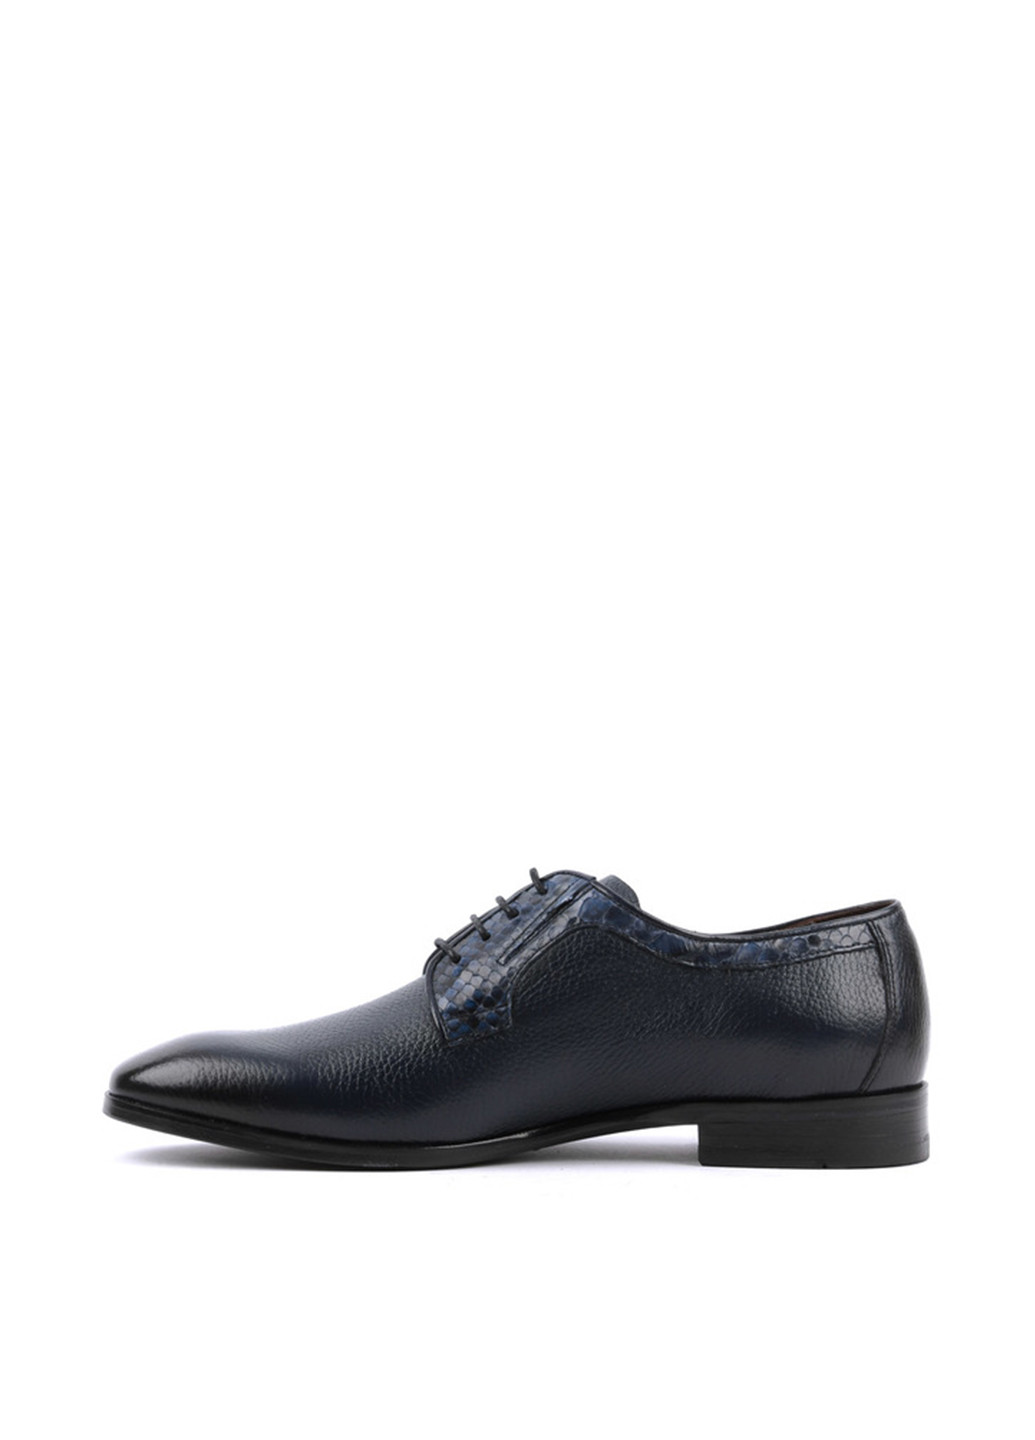 Темно-синие классические туфли Le'BERDES на шнурках